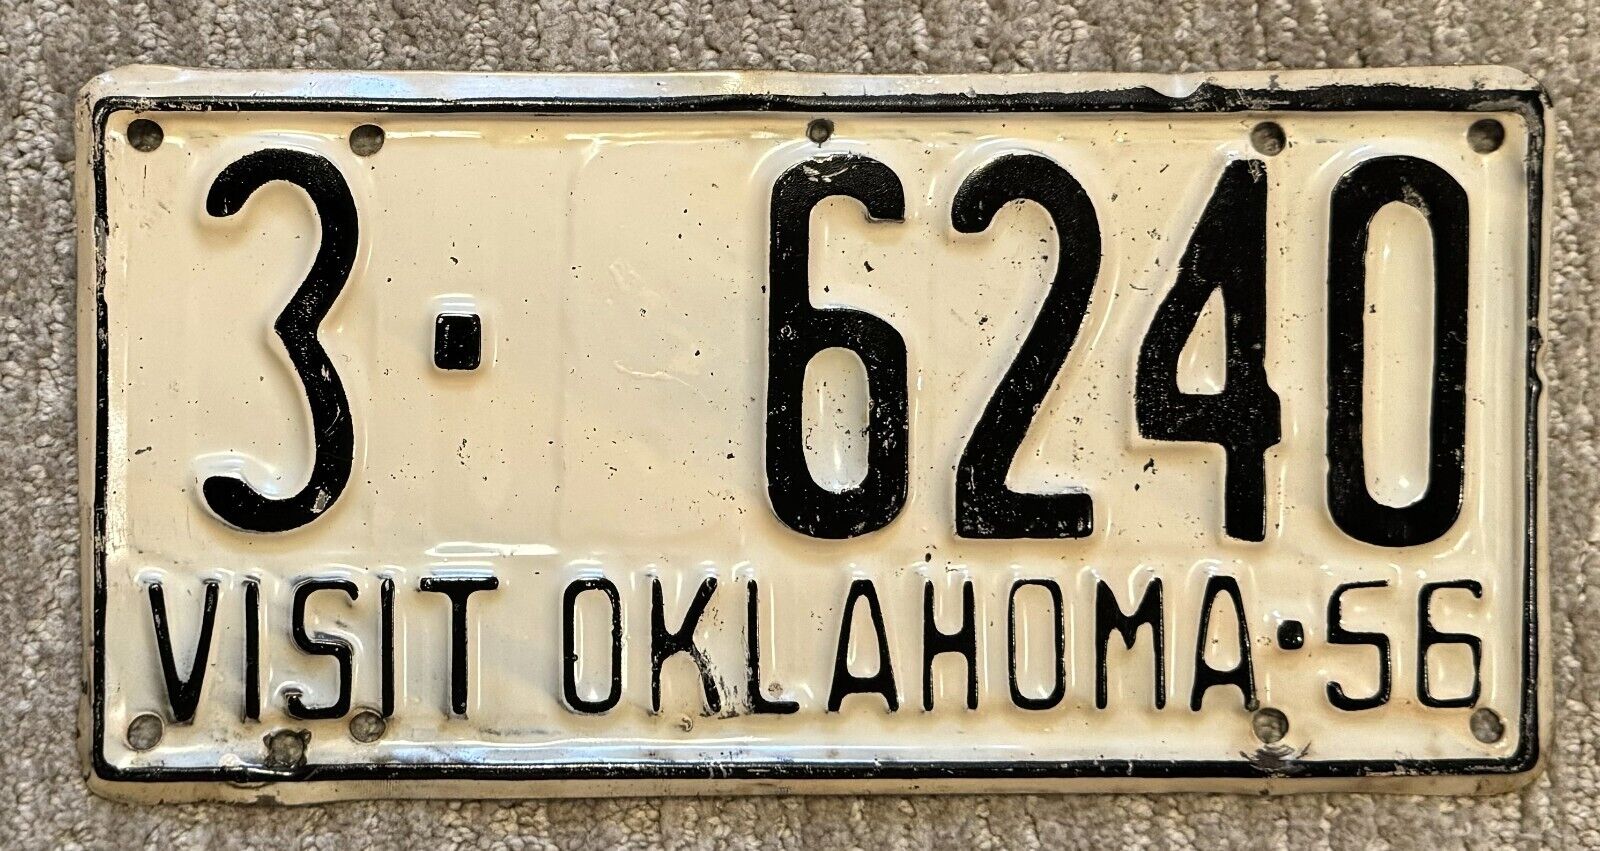 1956 Oklahoma License Plate - Nice Original Paint